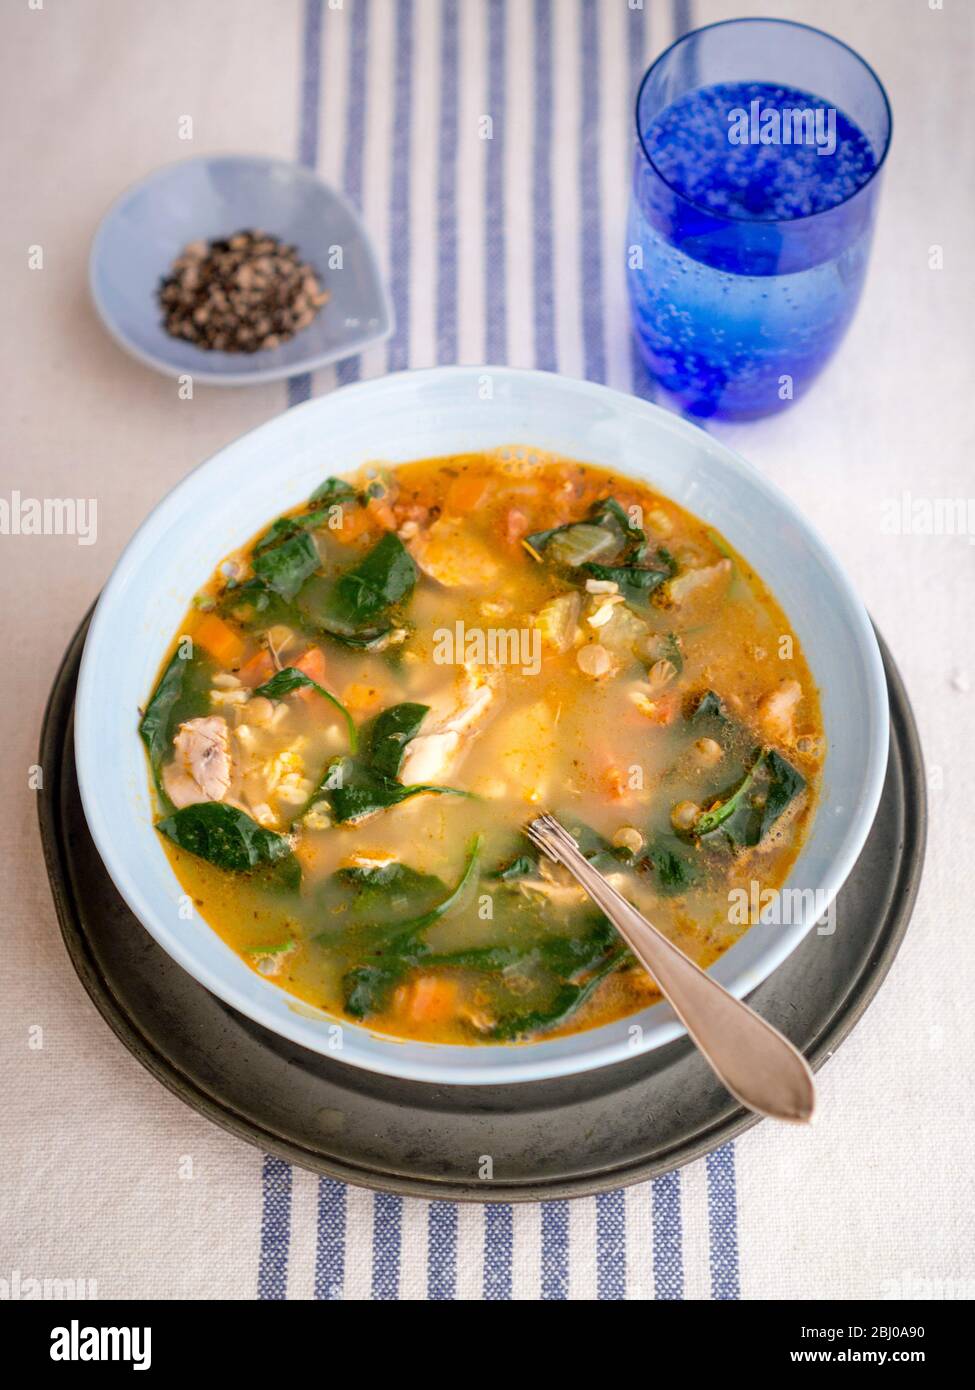 Repas complet Soupe de poulet, chorizo et légumes avec du riz brun, lentilles et épinards, servi dans un bol bleu pâle Banque D'Images